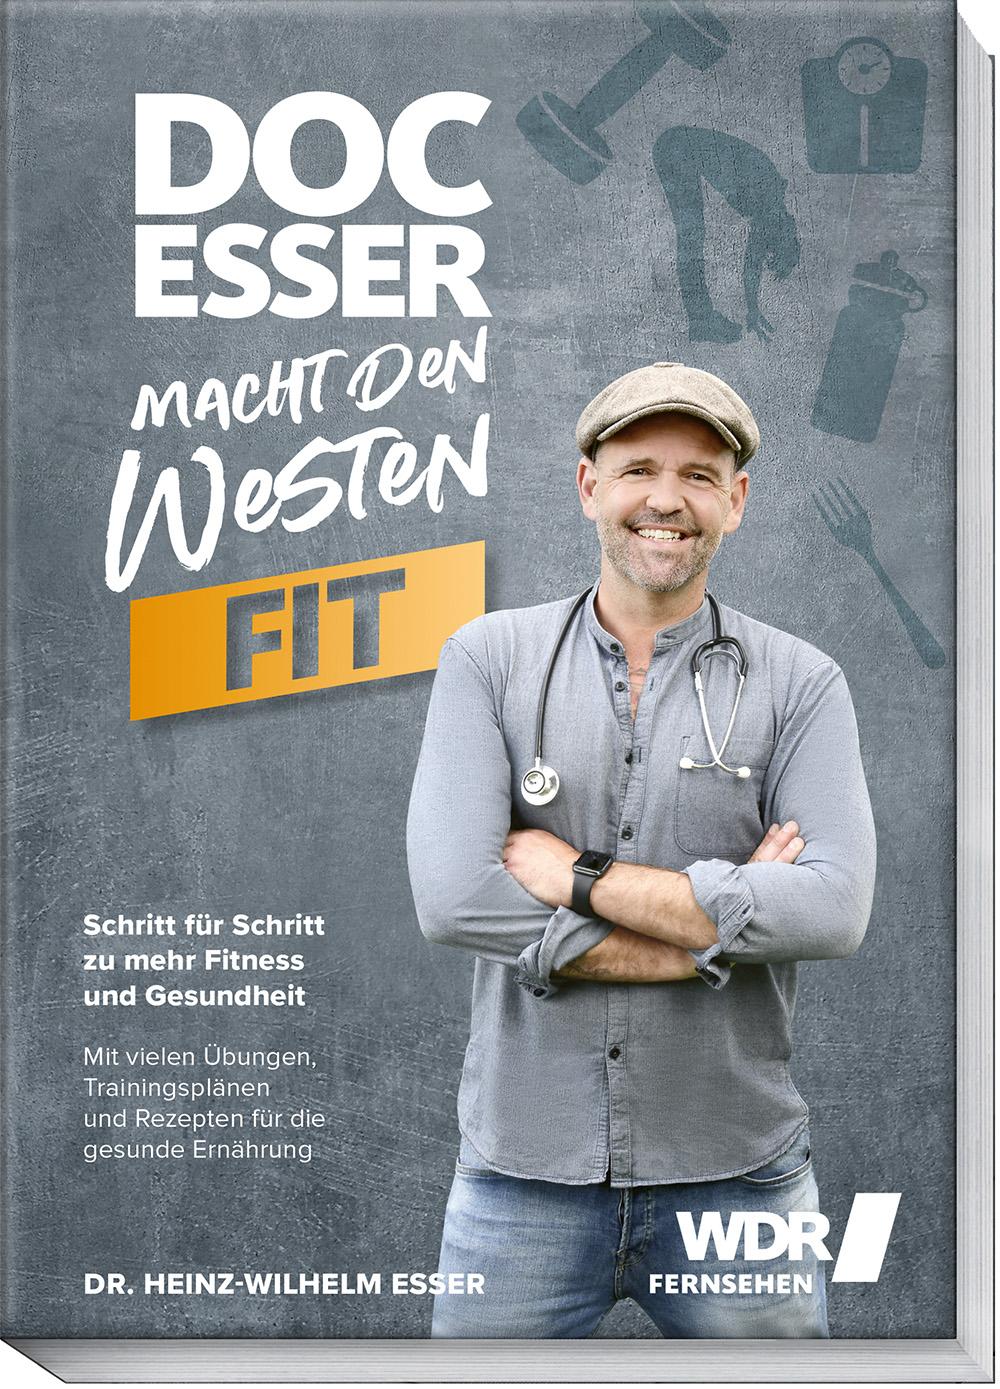 Doc Esser macht den Westen fit Schritt für Schritt zu mehr Fitness und Gesundheit mit vielen Übungen, Trainingsplänen und Rezepten für die gesunde Ernährung